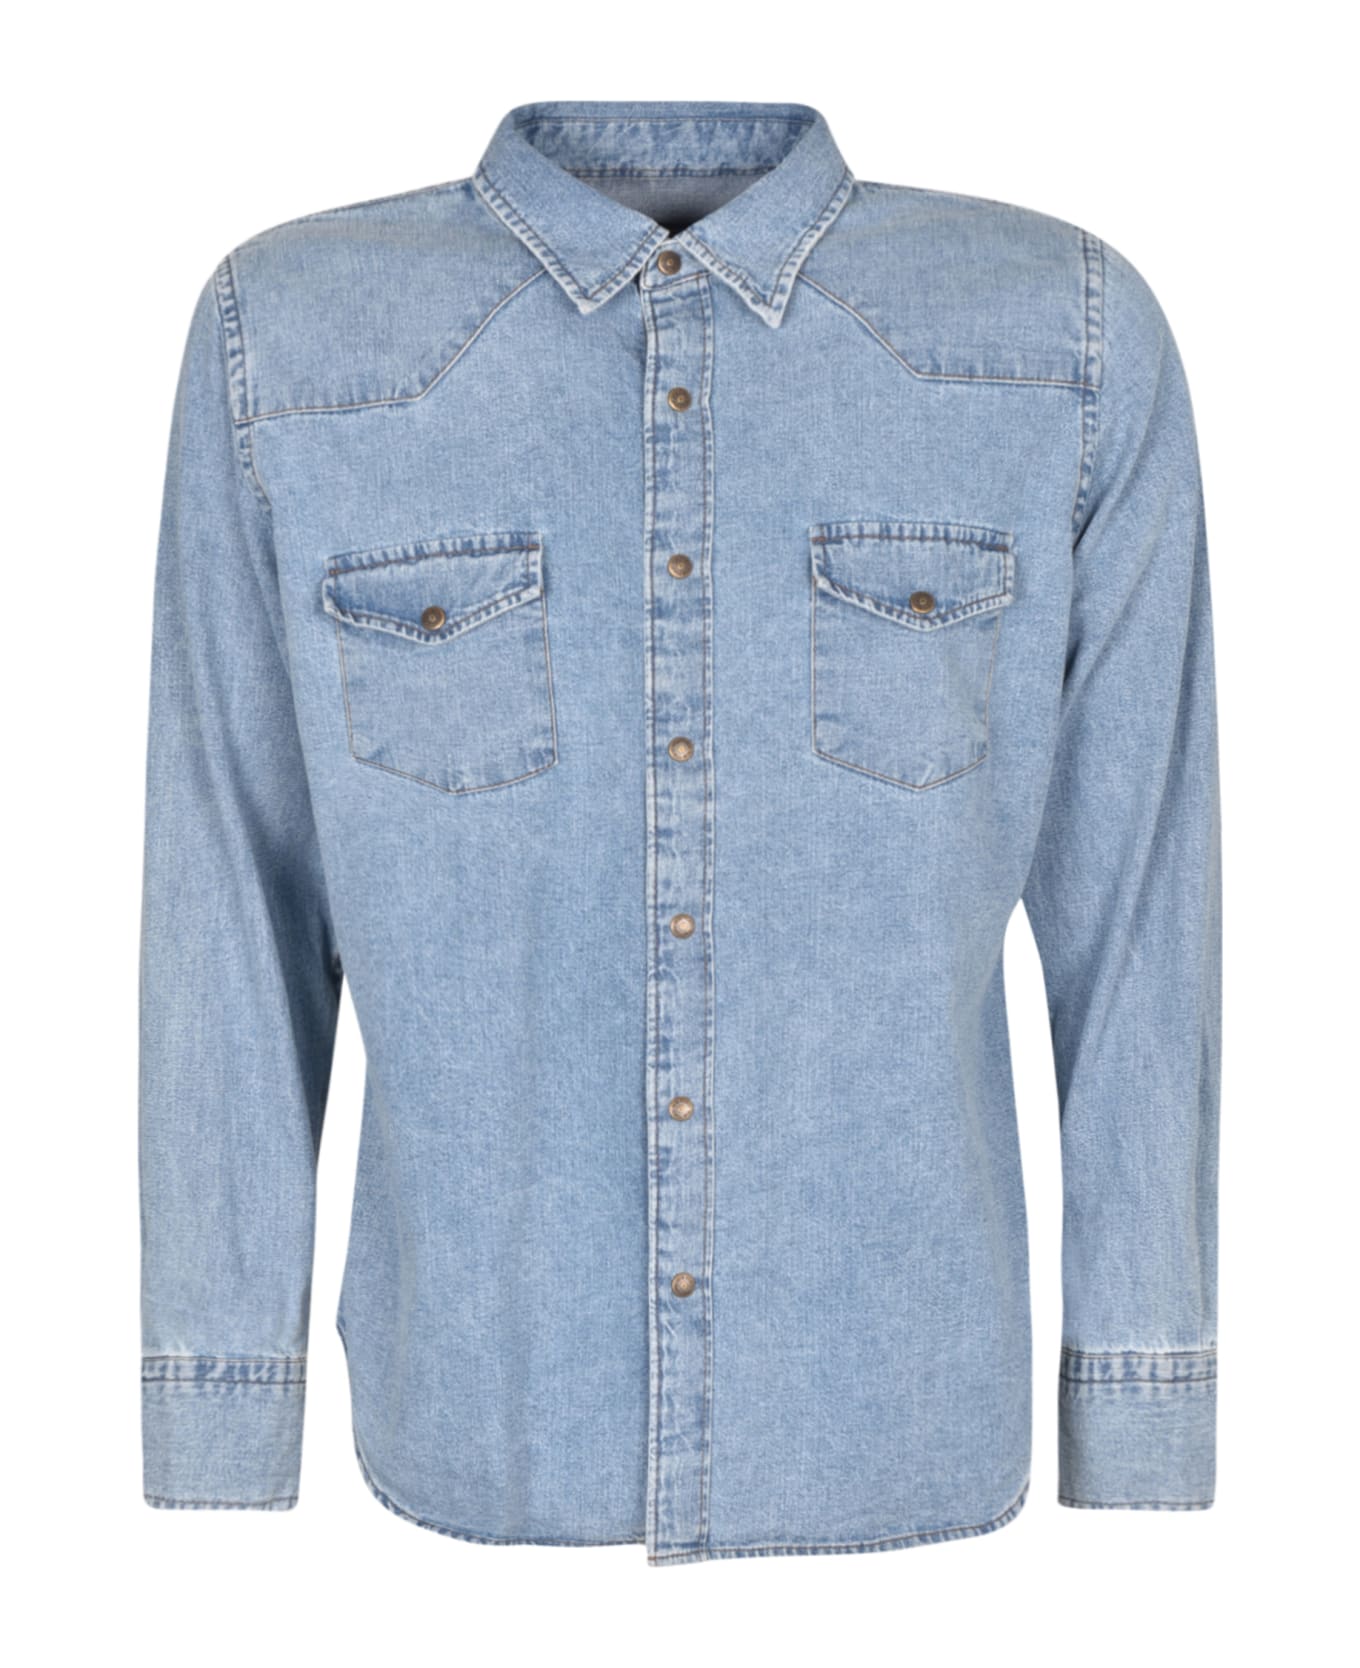 Tom Ford Denim Buttoned Shirt - Medium Blue